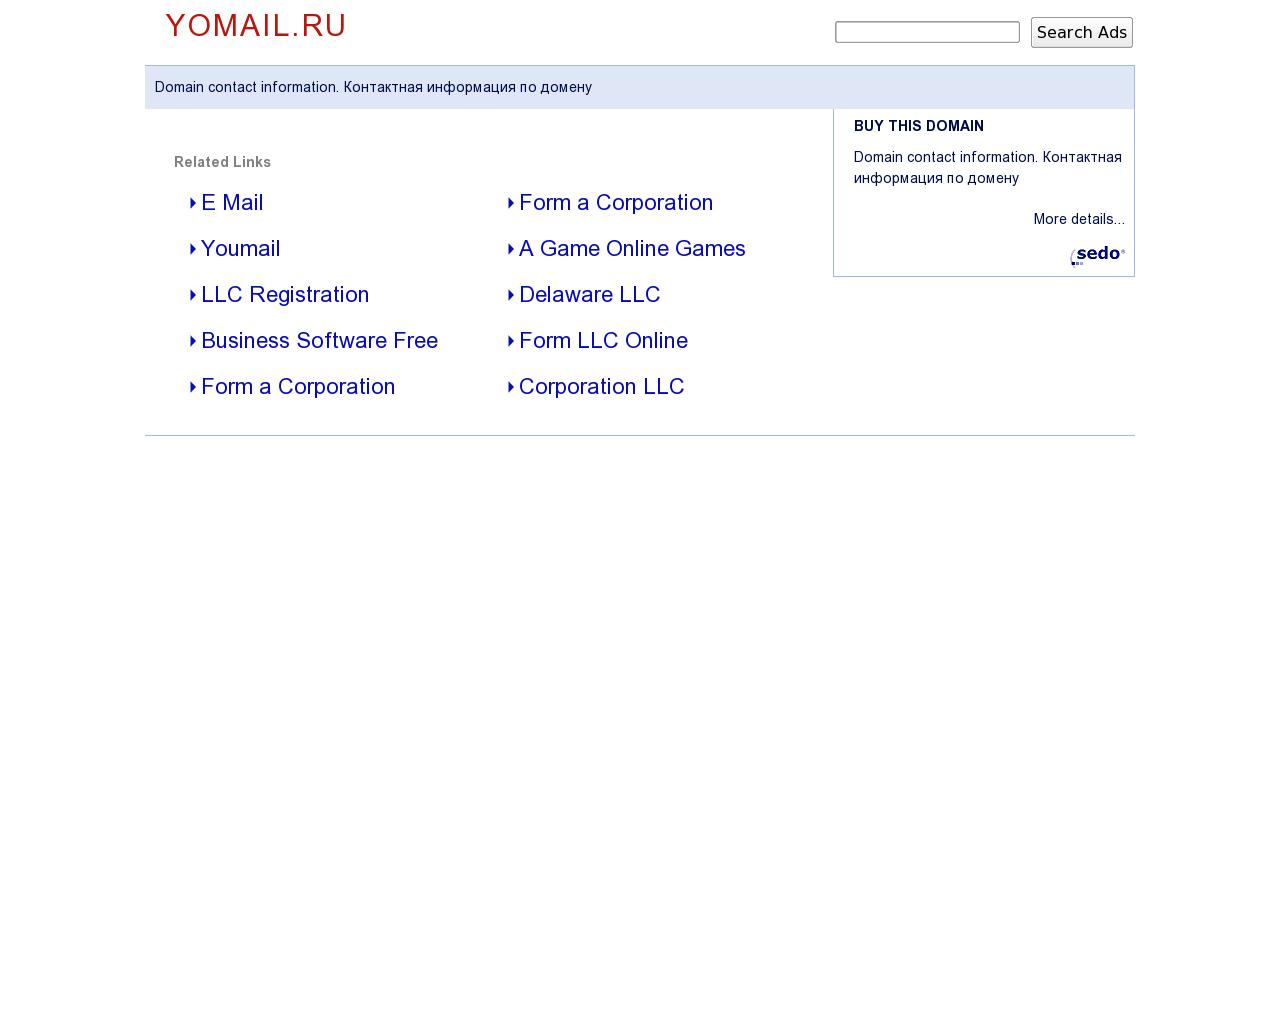 Изображение сайта yomail.ru в разрешении 1280x1024